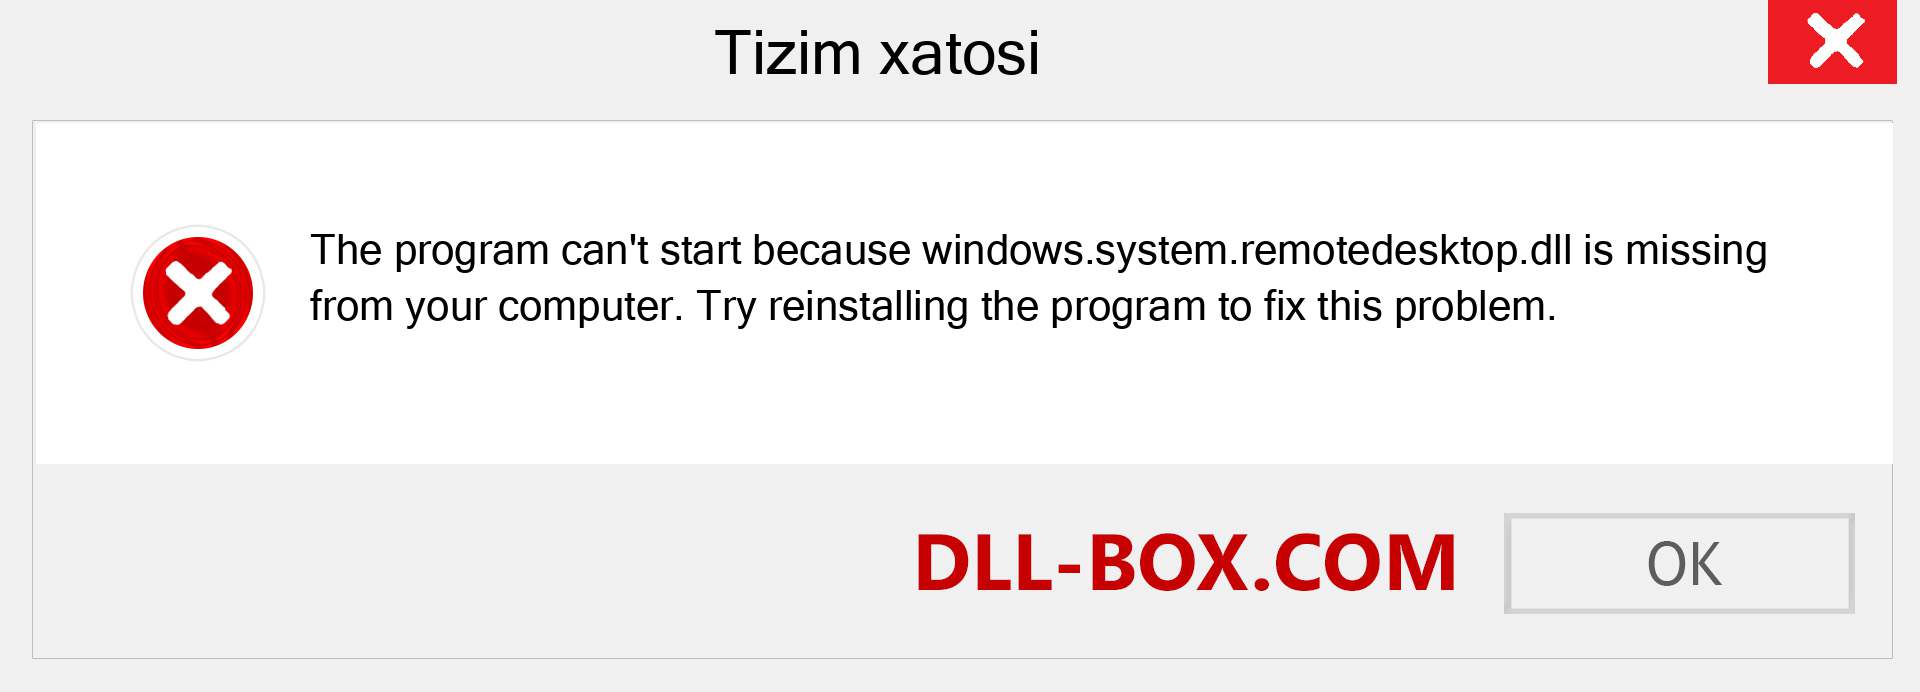 windows.system.remotedesktop.dll fayli yo'qolganmi?. Windows 7, 8, 10 uchun yuklab olish - Windowsda windows.system.remotedesktop dll etishmayotgan xatoni tuzating, rasmlar, rasmlar